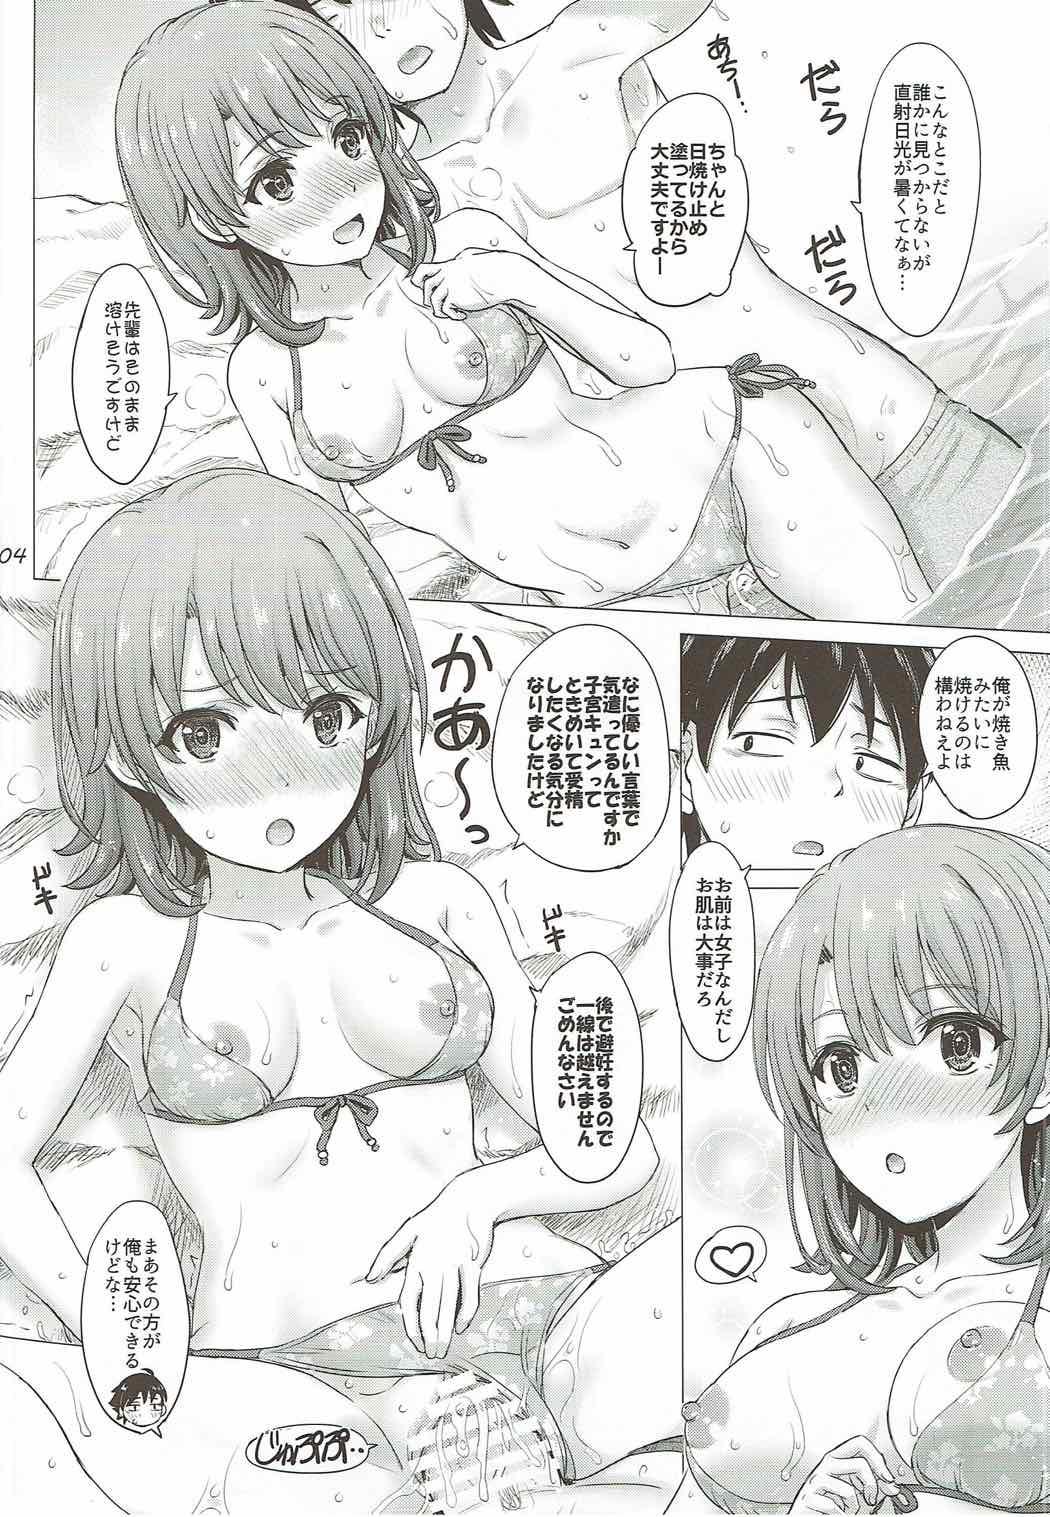 Cheat Isshiki Iroha no Iyarashii Natsuyasumi. - Yahari ore no seishun love come wa machigatteiru Girlfriend - Page 3